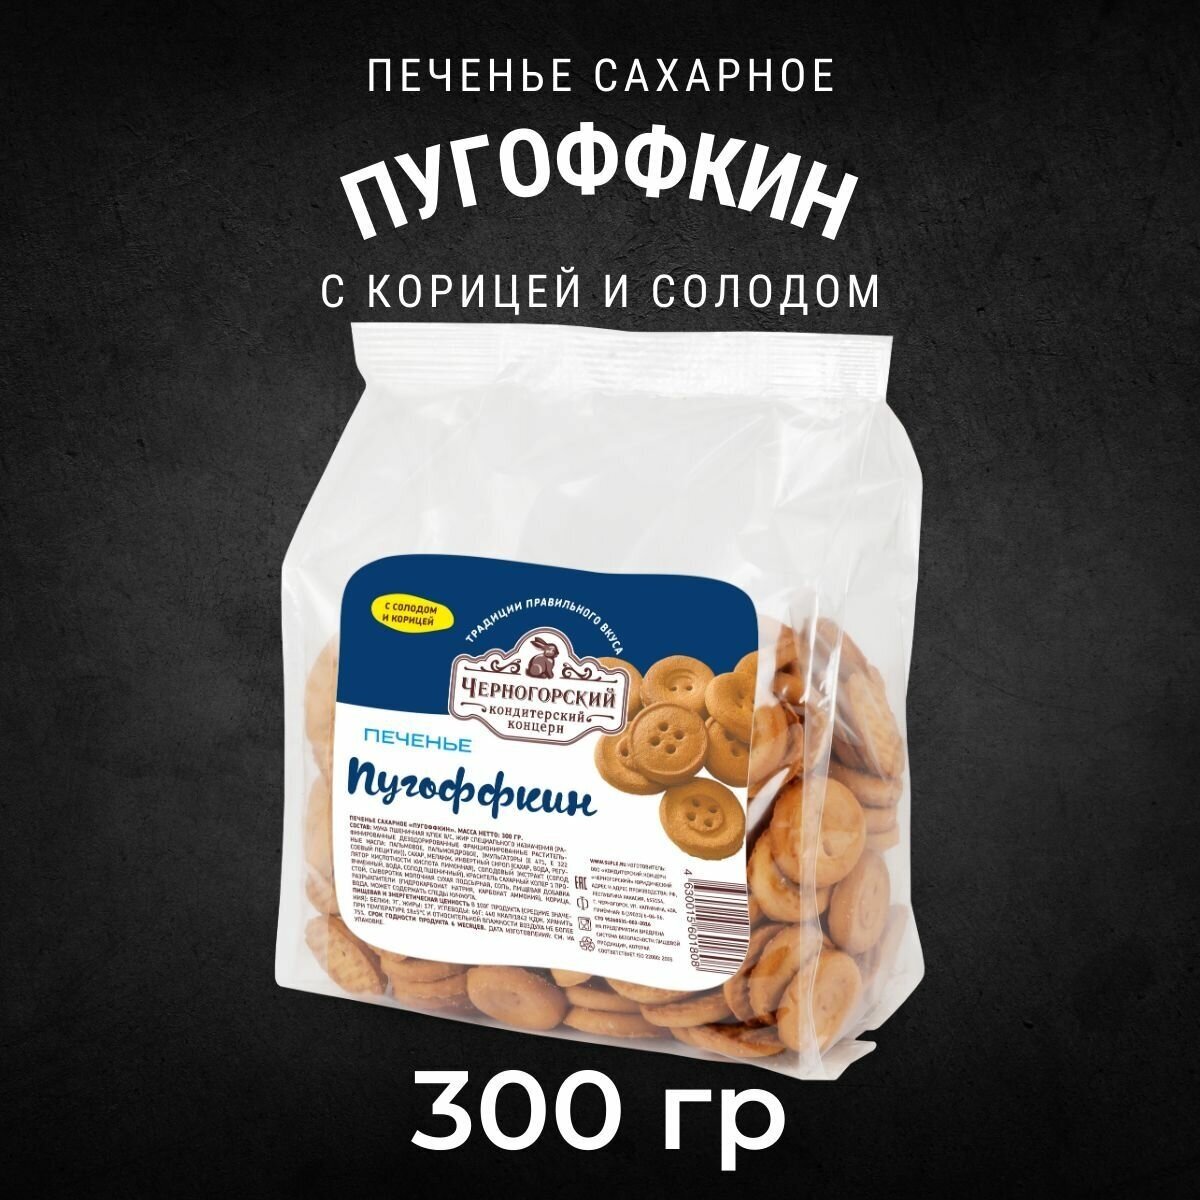 Печенье сахарное Черногорский пугоффкин 300 грамм - фотография № 2